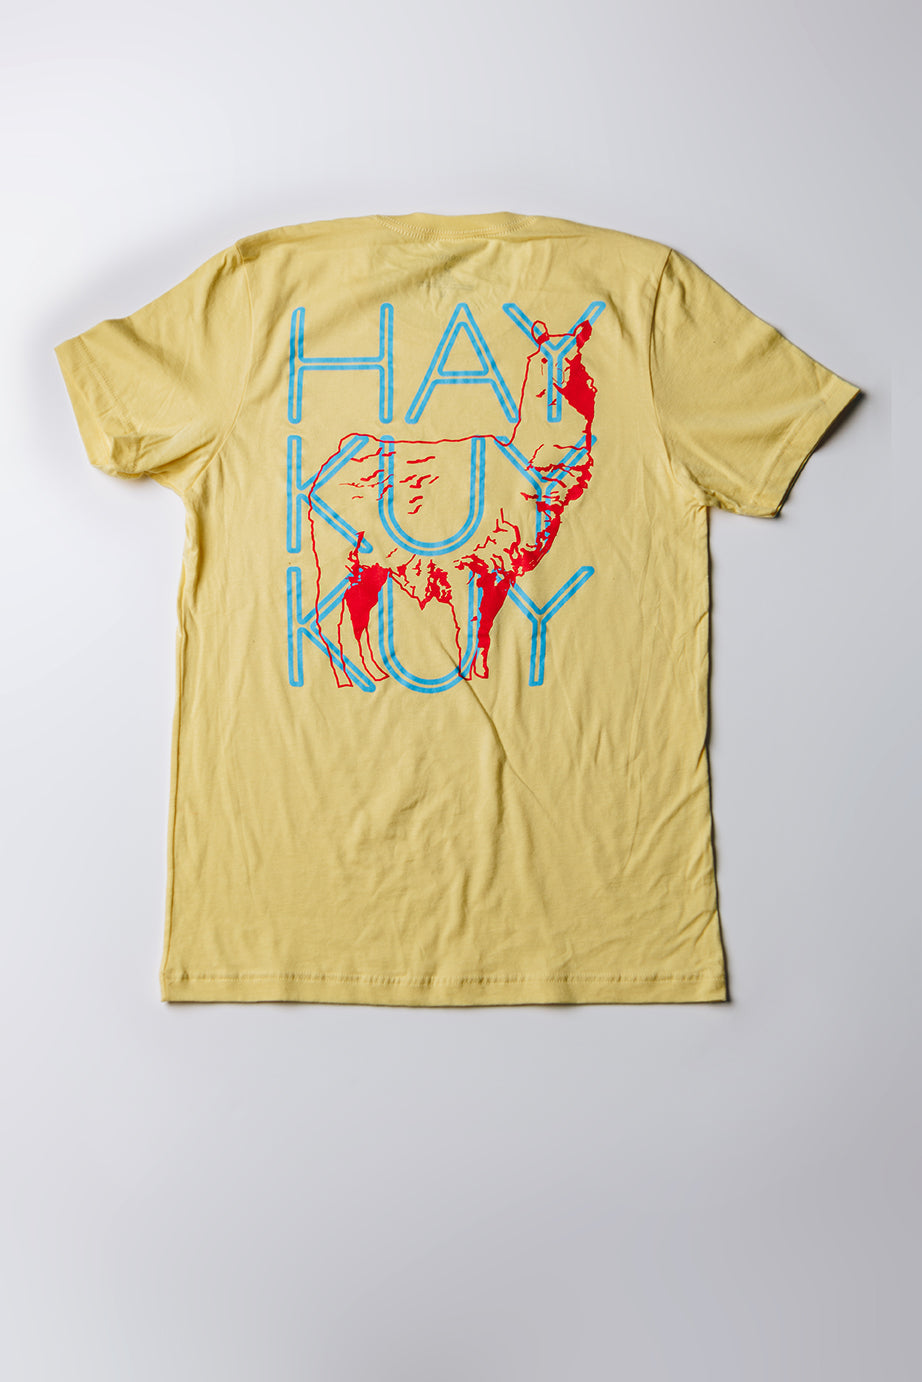 Haykuykuy - Yellow